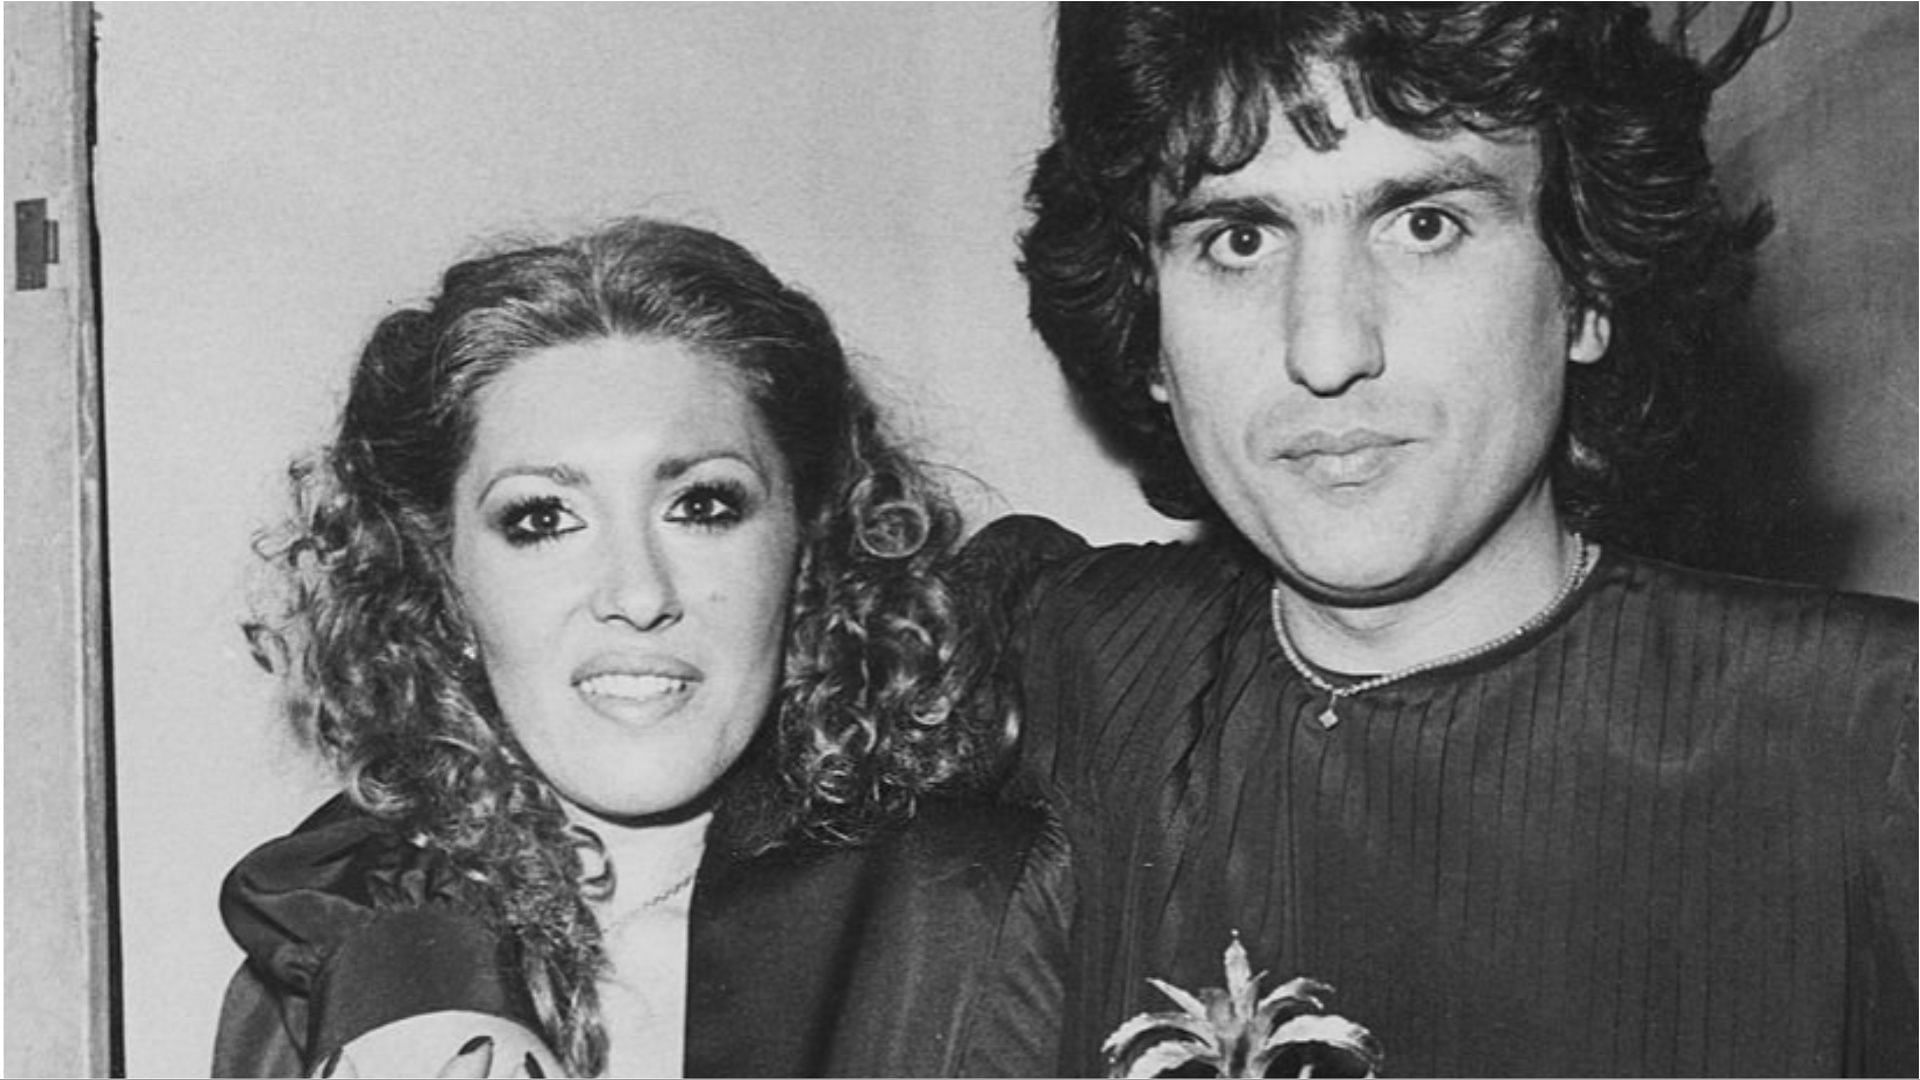 Toto Cutugno and Carla Cutugno were married since 1971 (Image via Egizio Fabbrici/Getty Images)